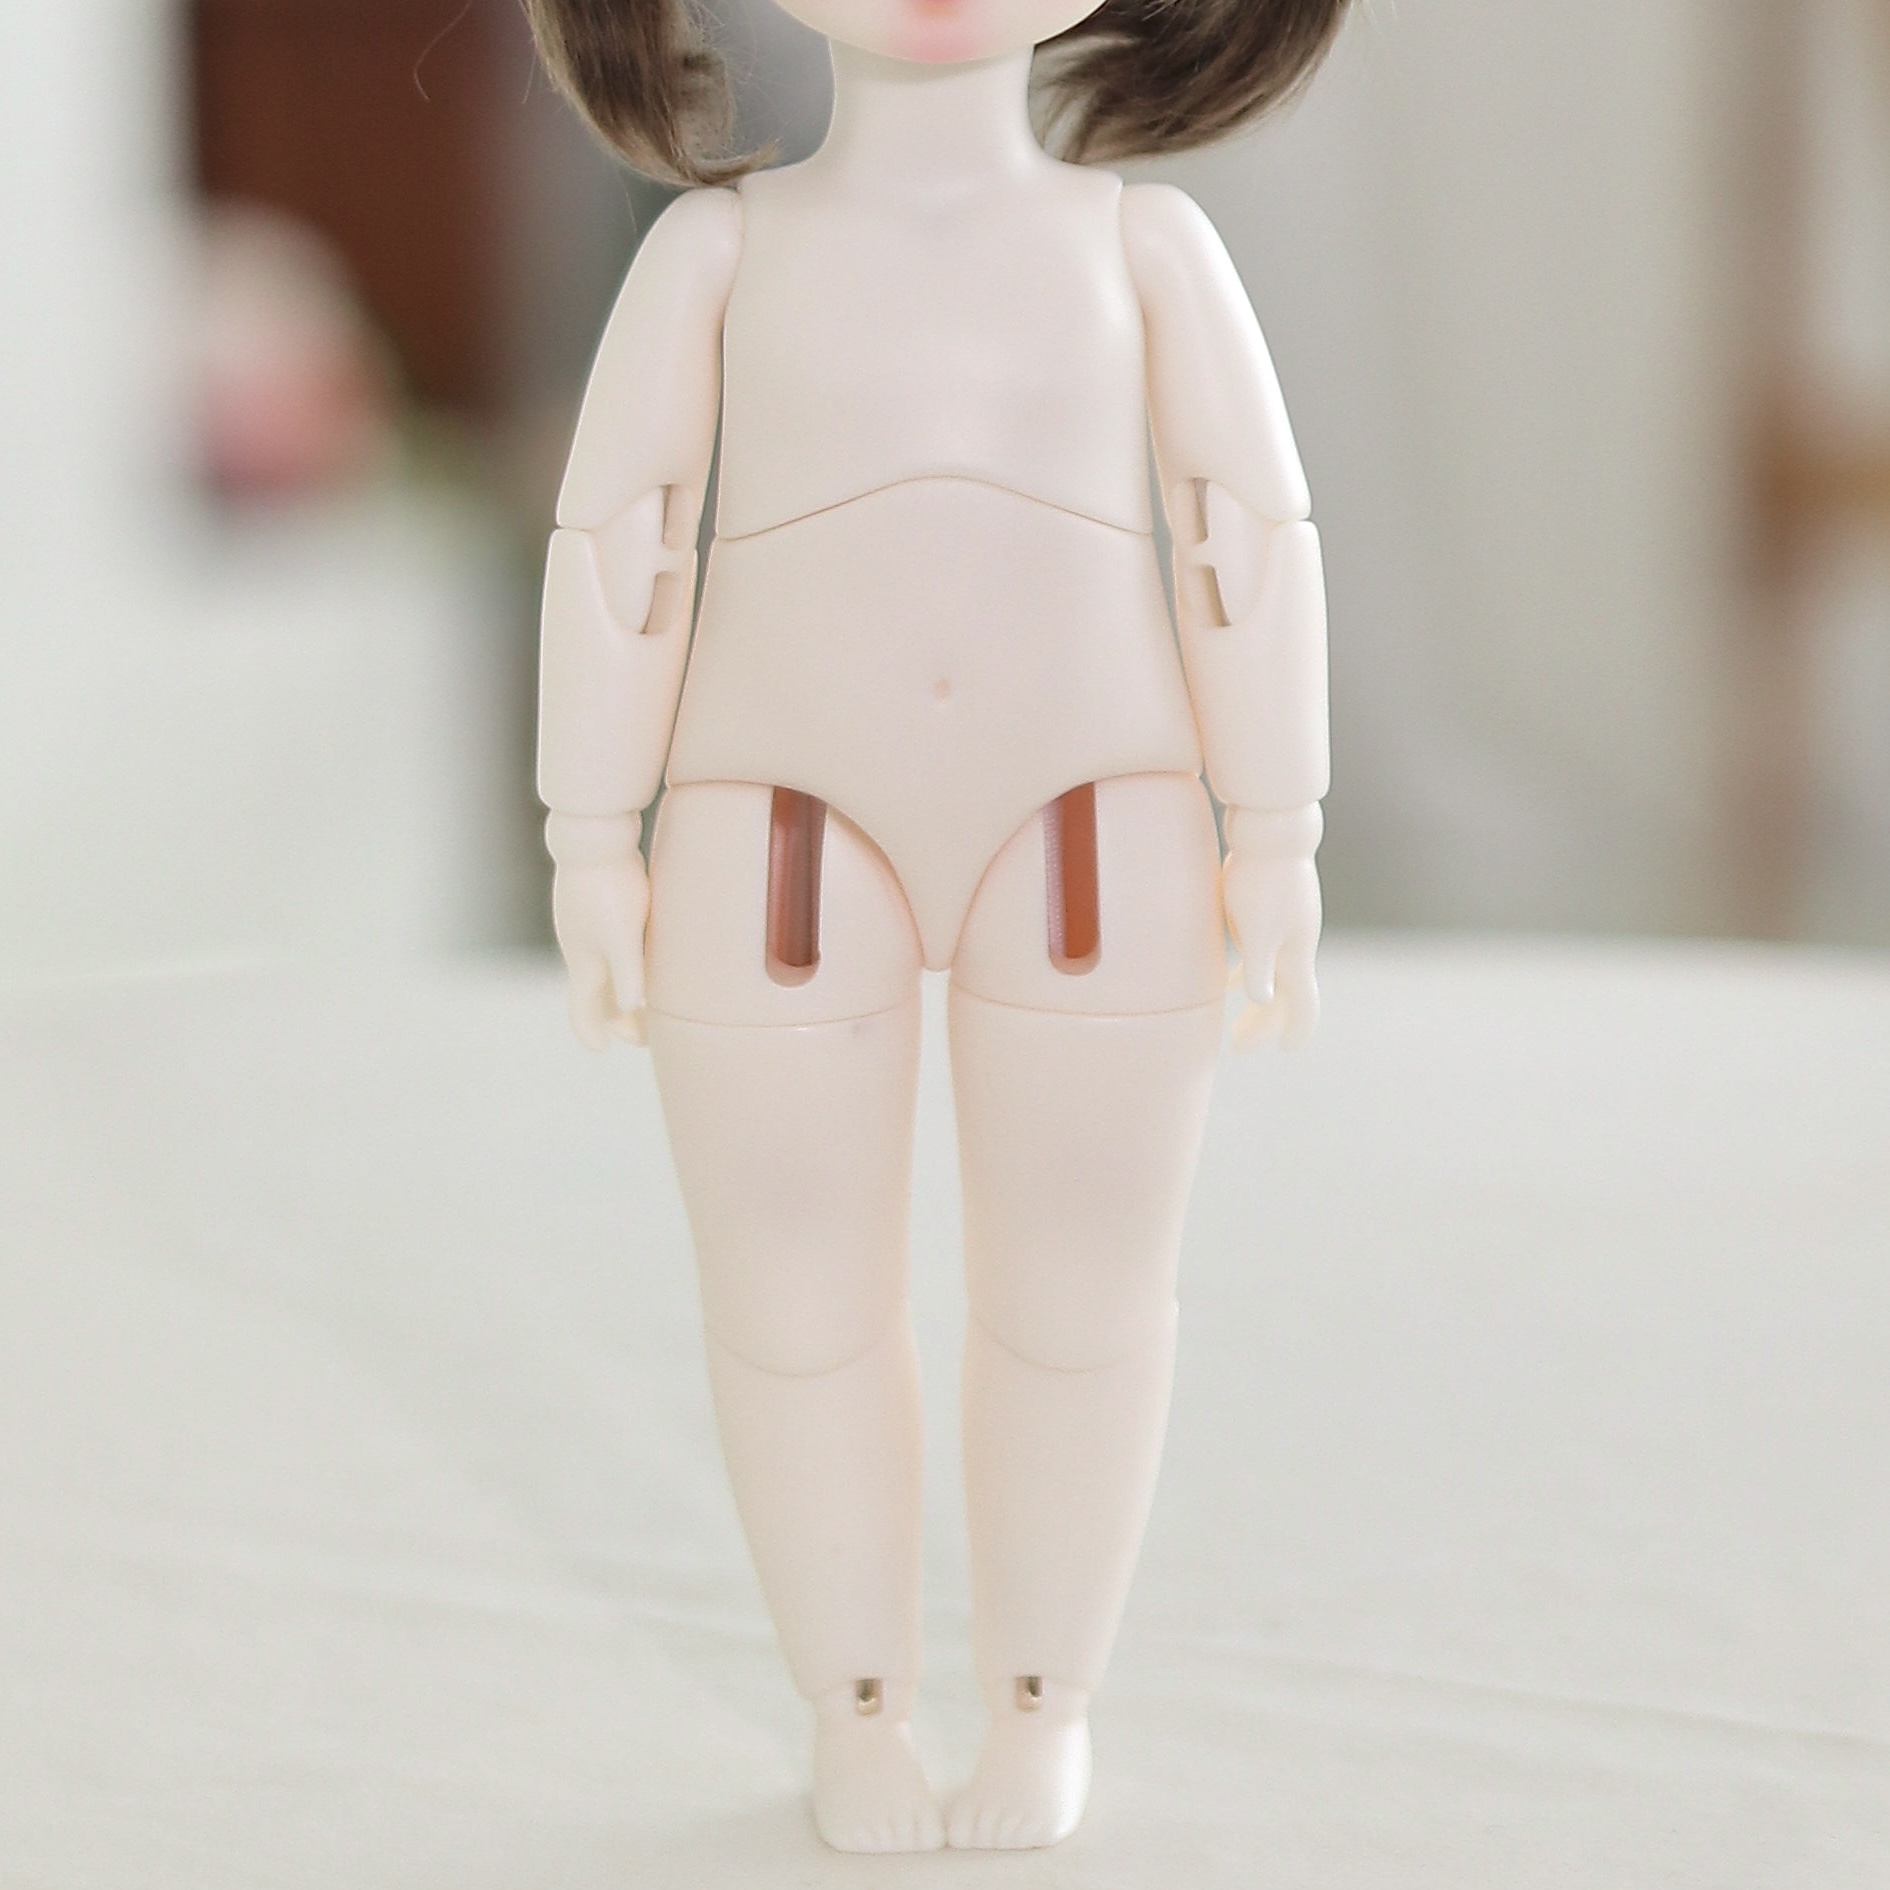 Baby body (22 cm USD)